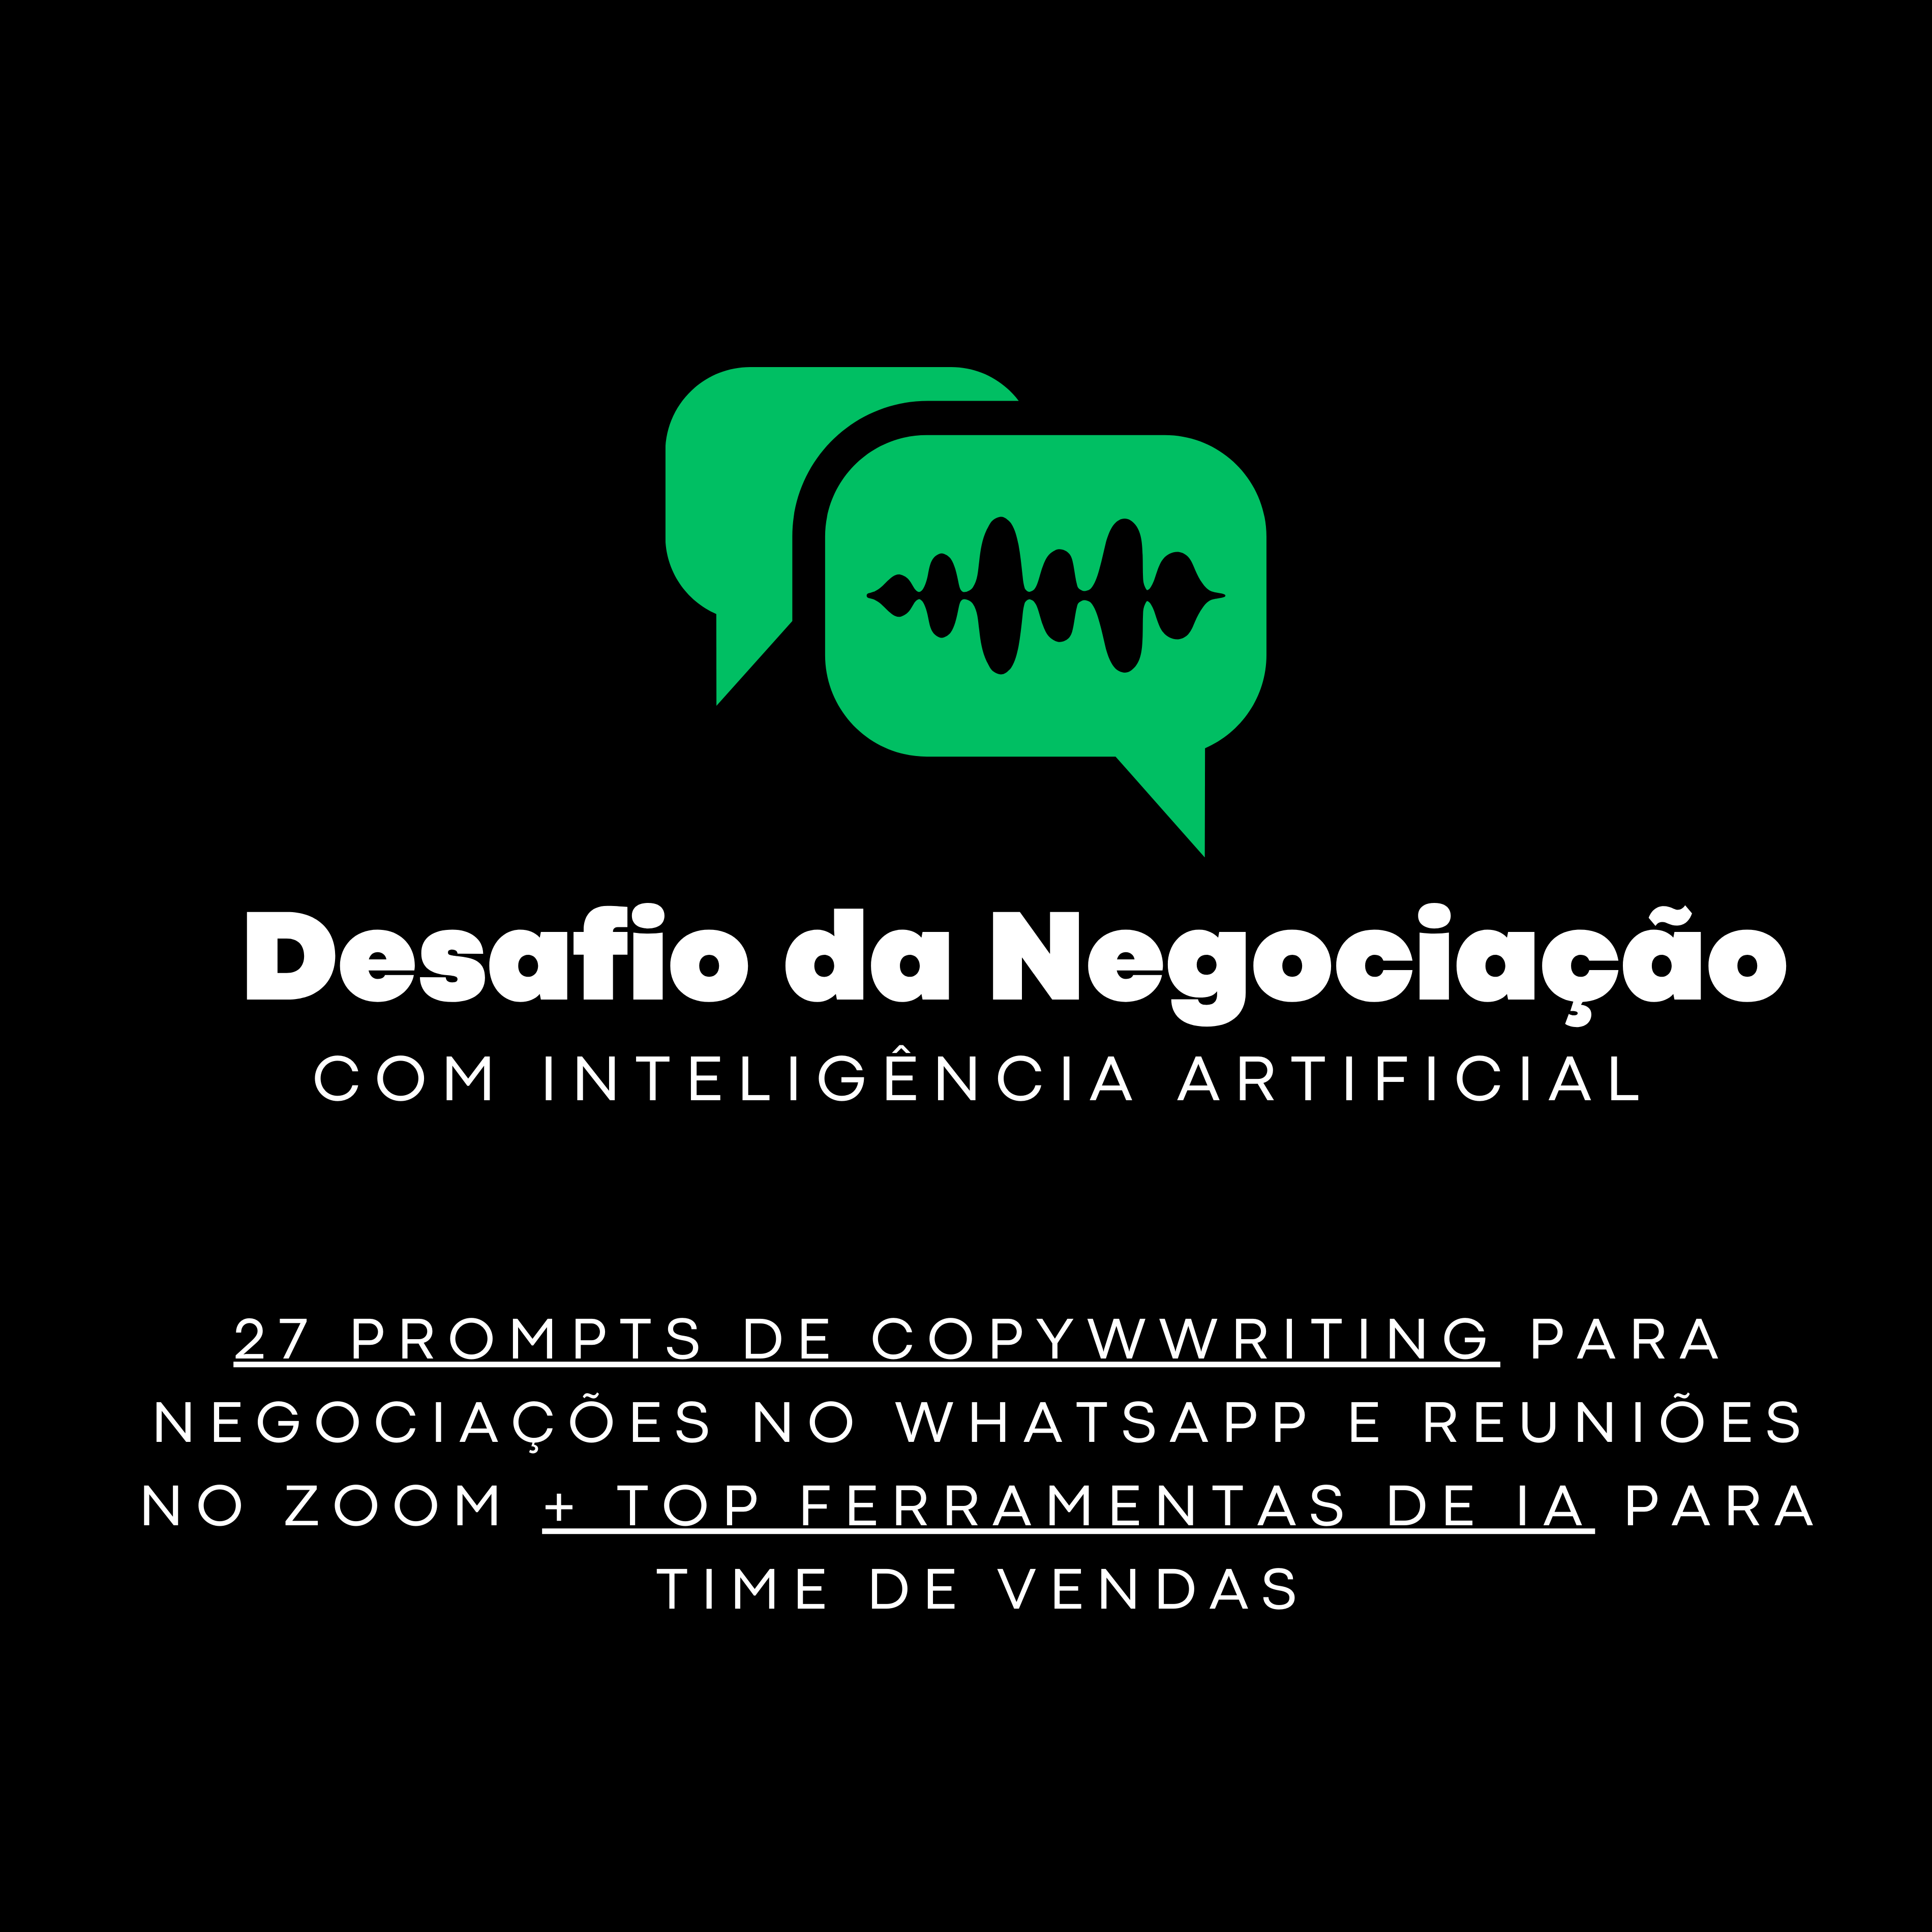 Desafio da Negociação com Inteligência Artificial: 27 prompts de copy para Whatsapp e reunião no ZOOM (DIA 9 DE OUTUBRO 13H - BRASÍLIA) 17